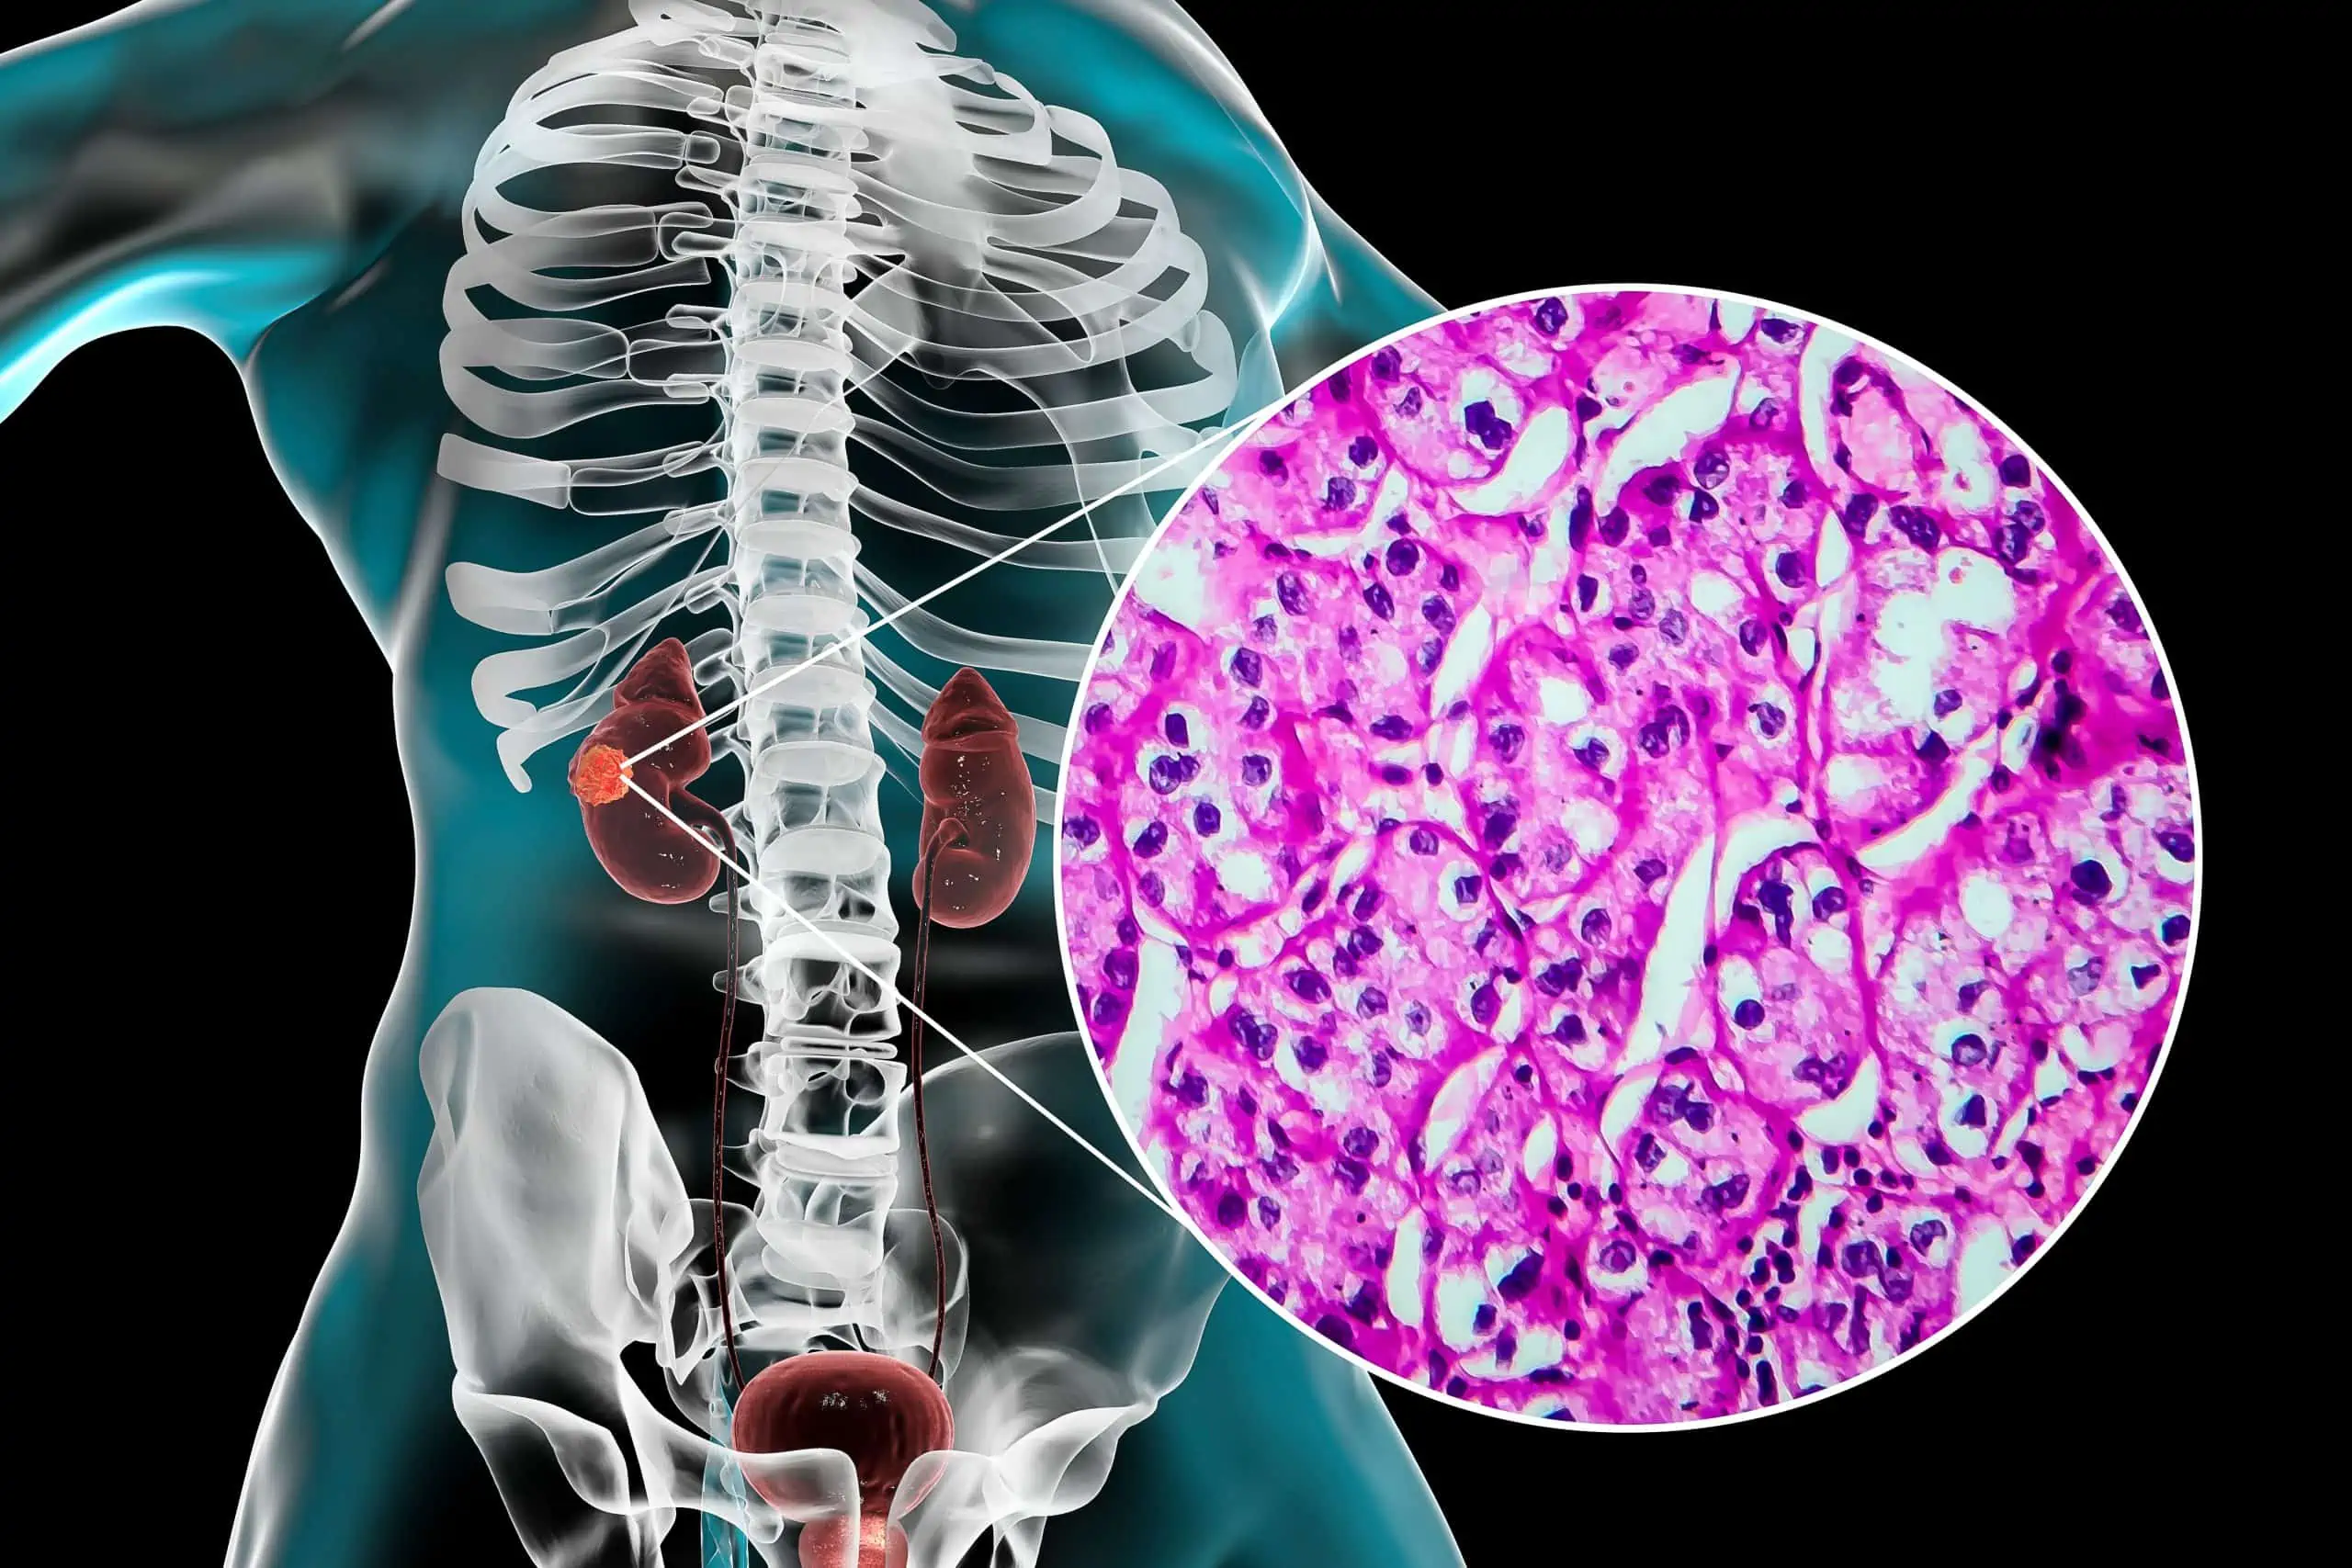 karcinom bubrežnih stanica - uzrok, simptomi, liječenje